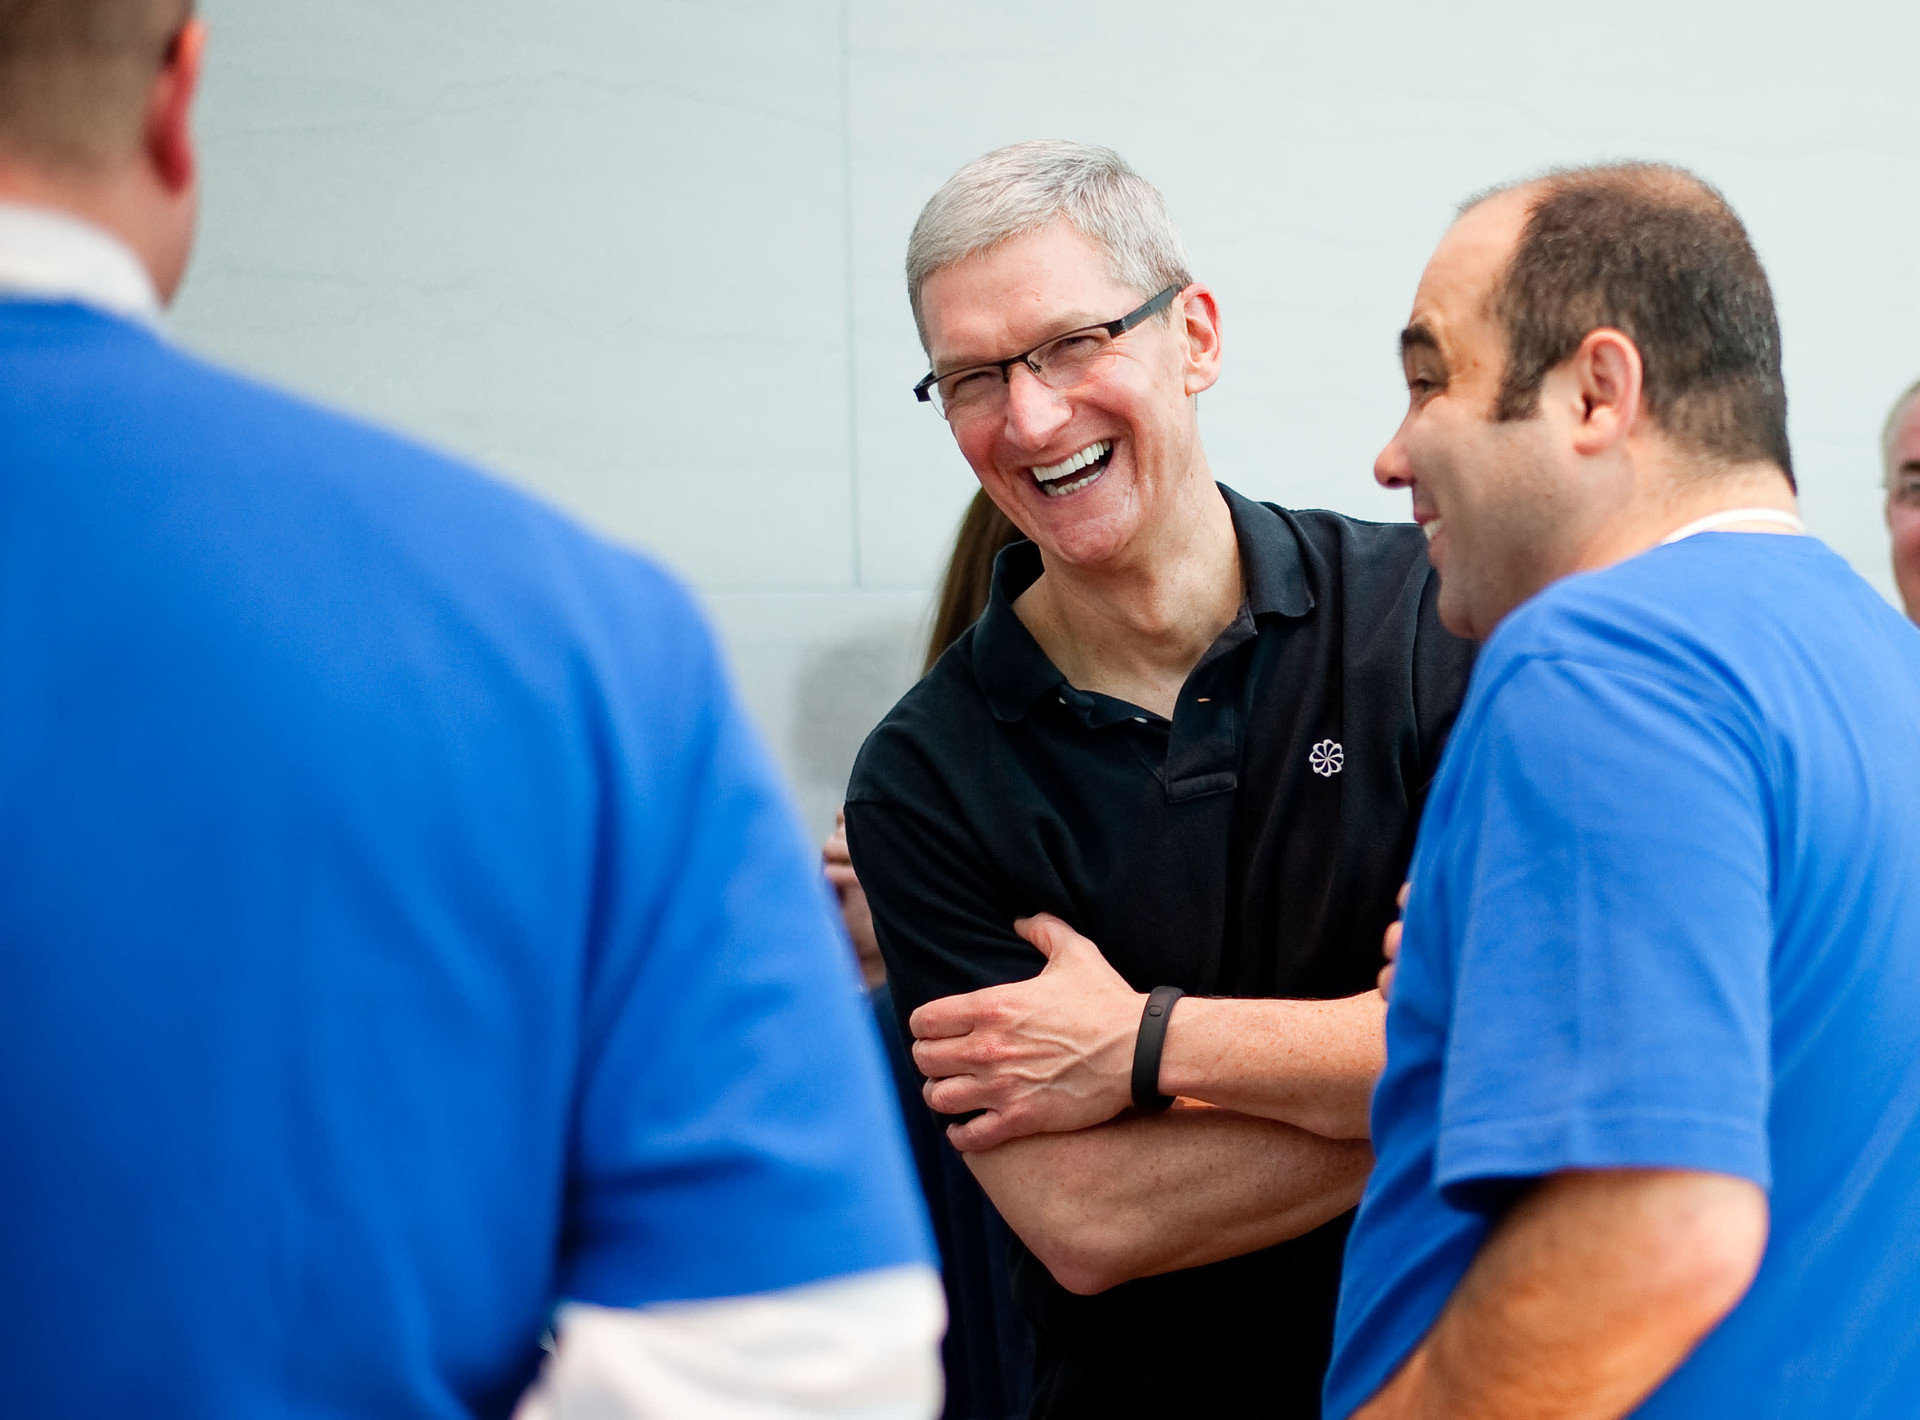 Trong khi Big Tech liên tục sa thải nhân viên, chiến lược tuyển dụng của Apple lại gây bất ngờ, thể hiện giá trị anh cả ngành công nghệ - Ảnh 2.